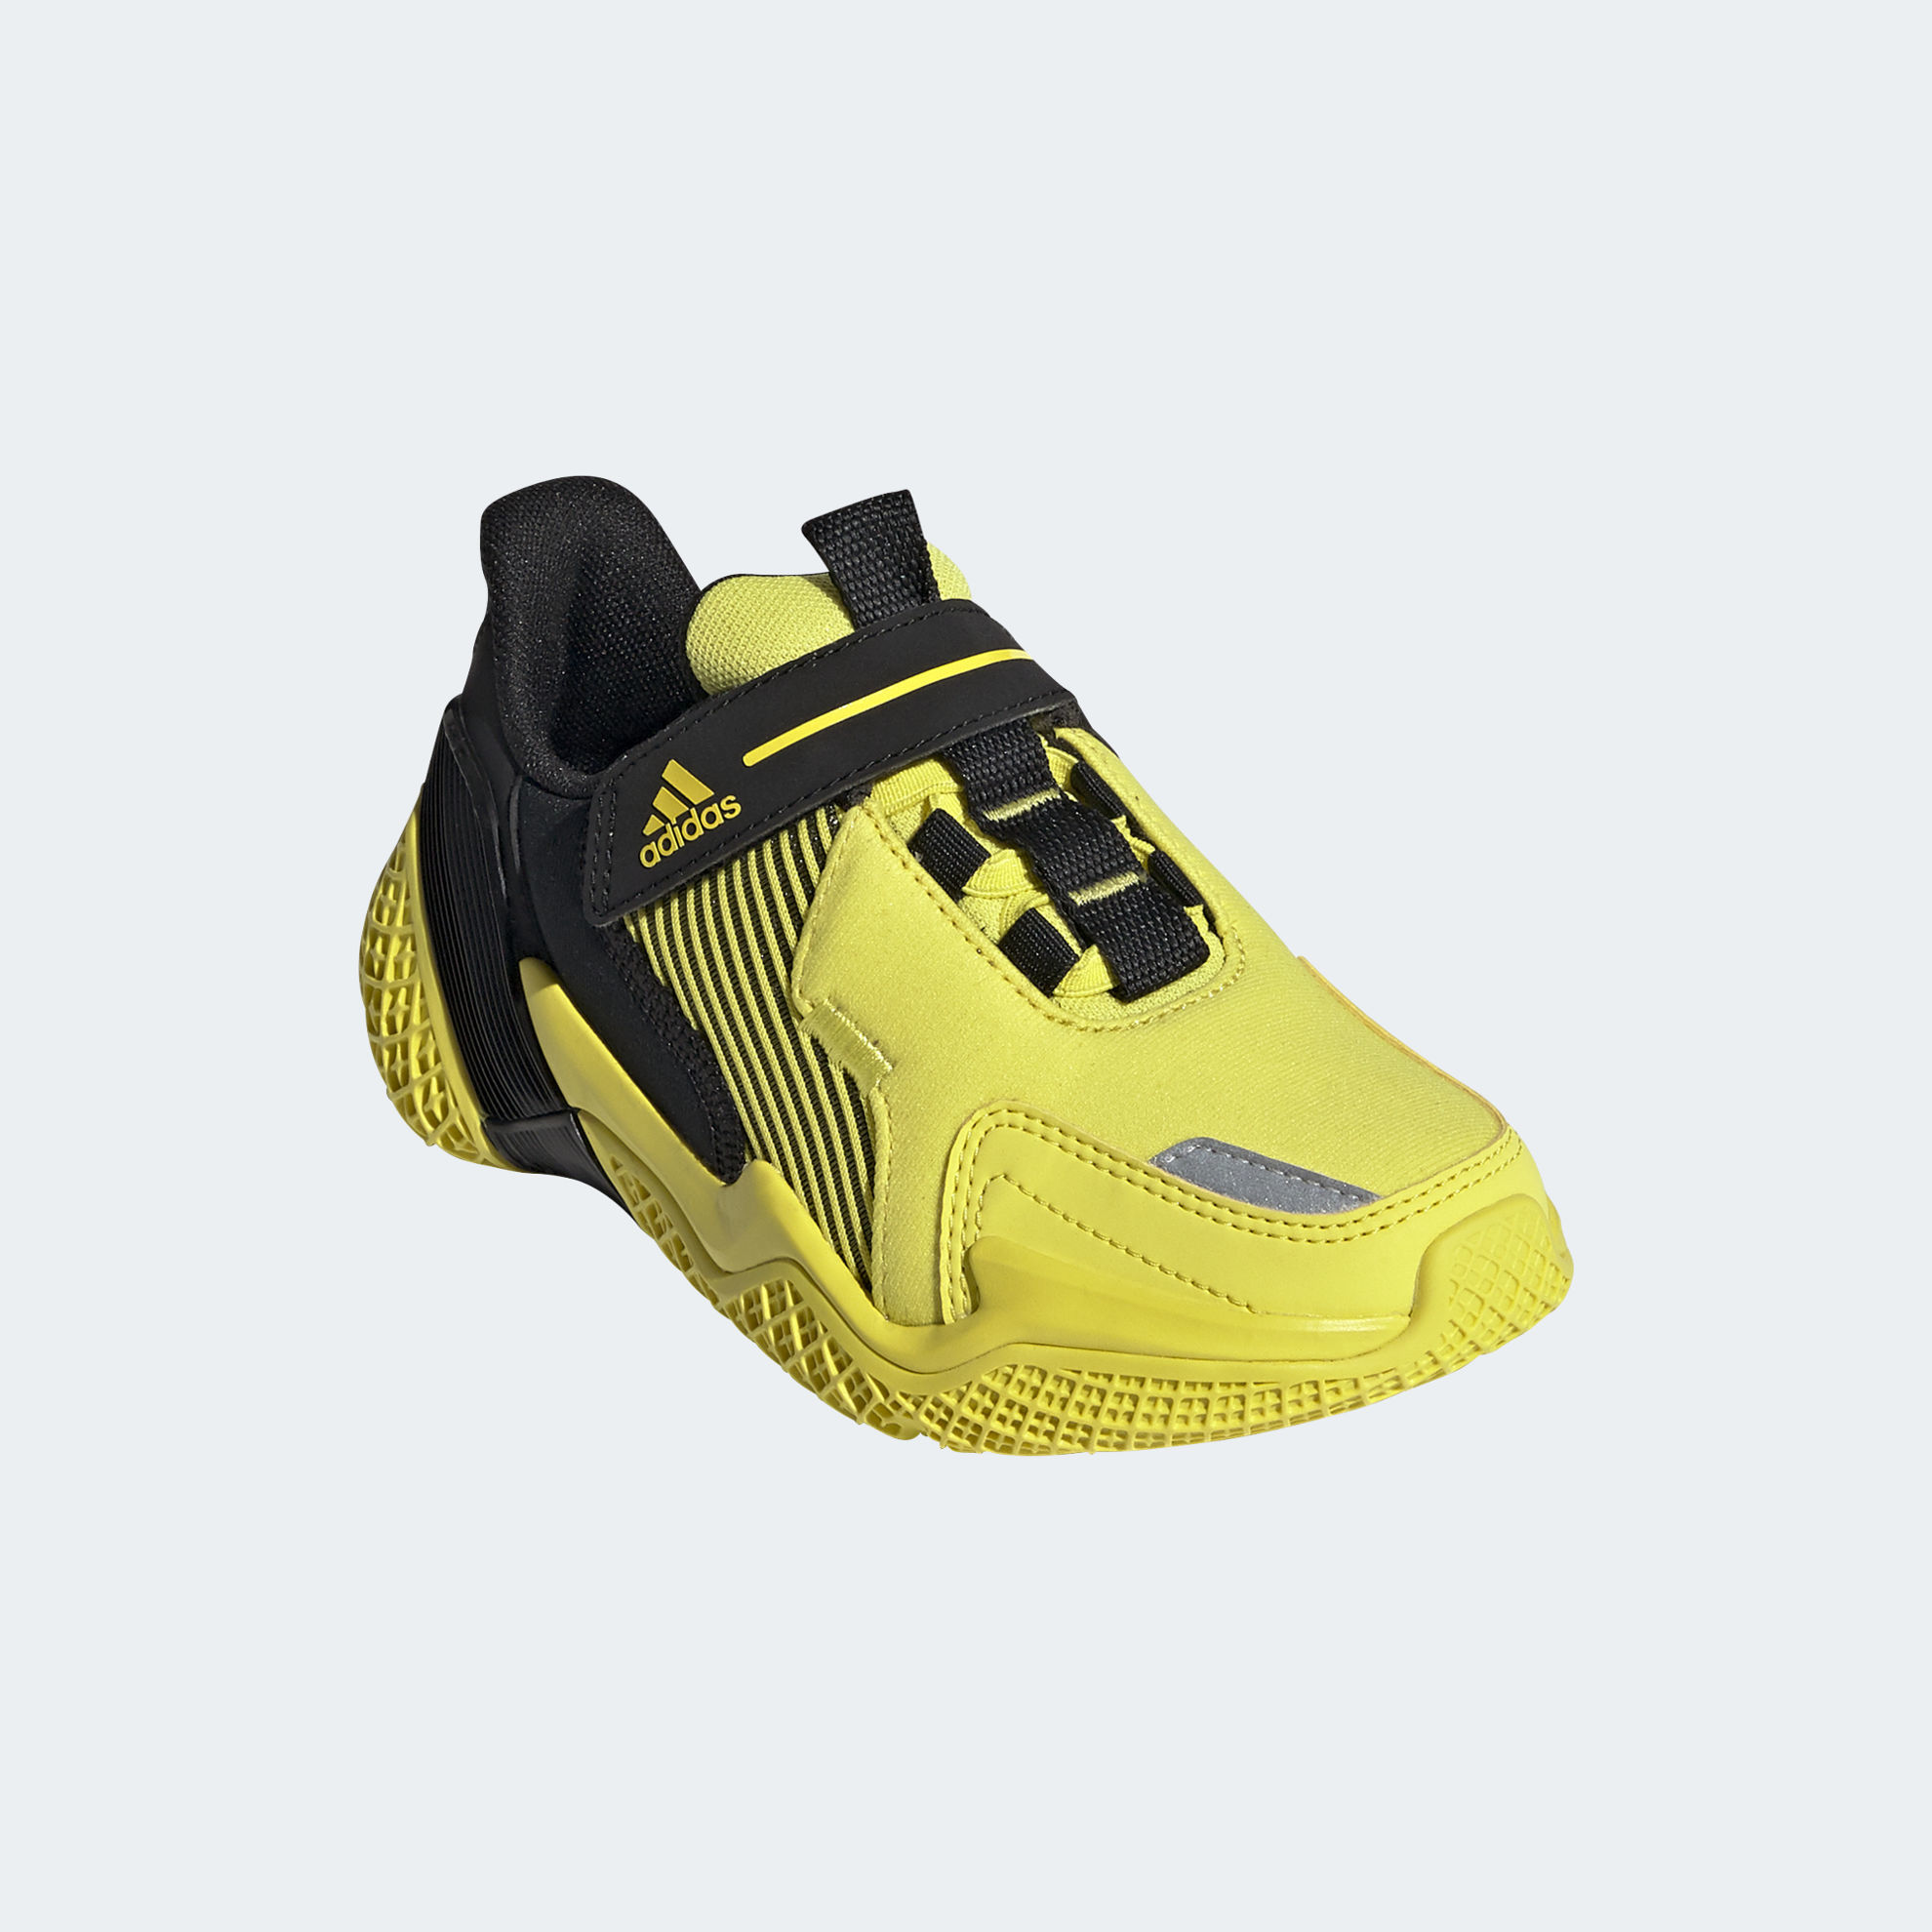 4uture runner shoes